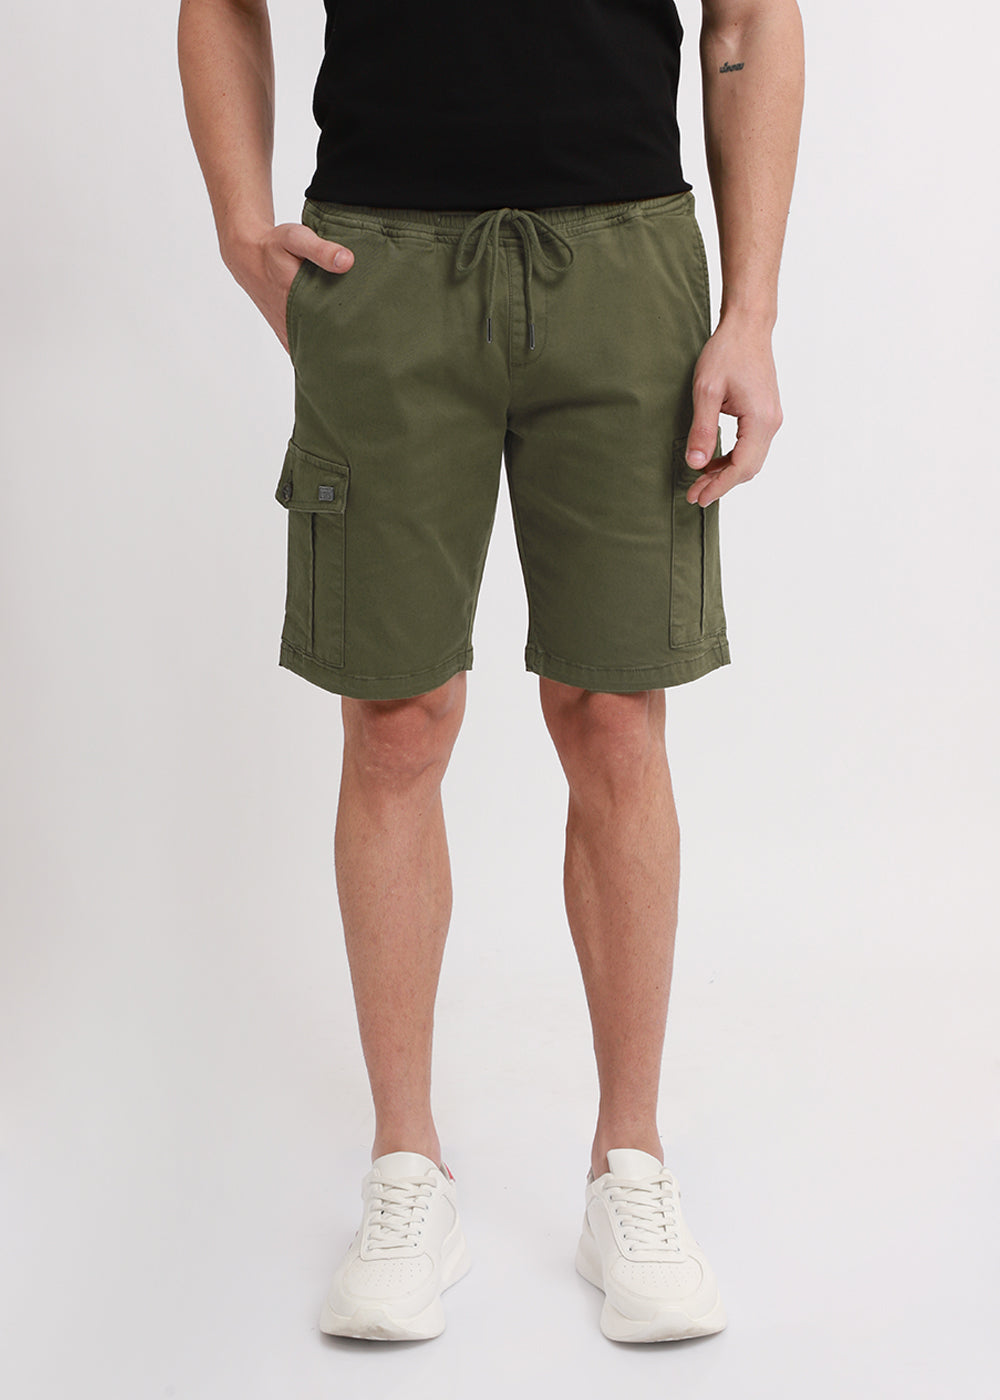  Green Cotton Cargo Shorts